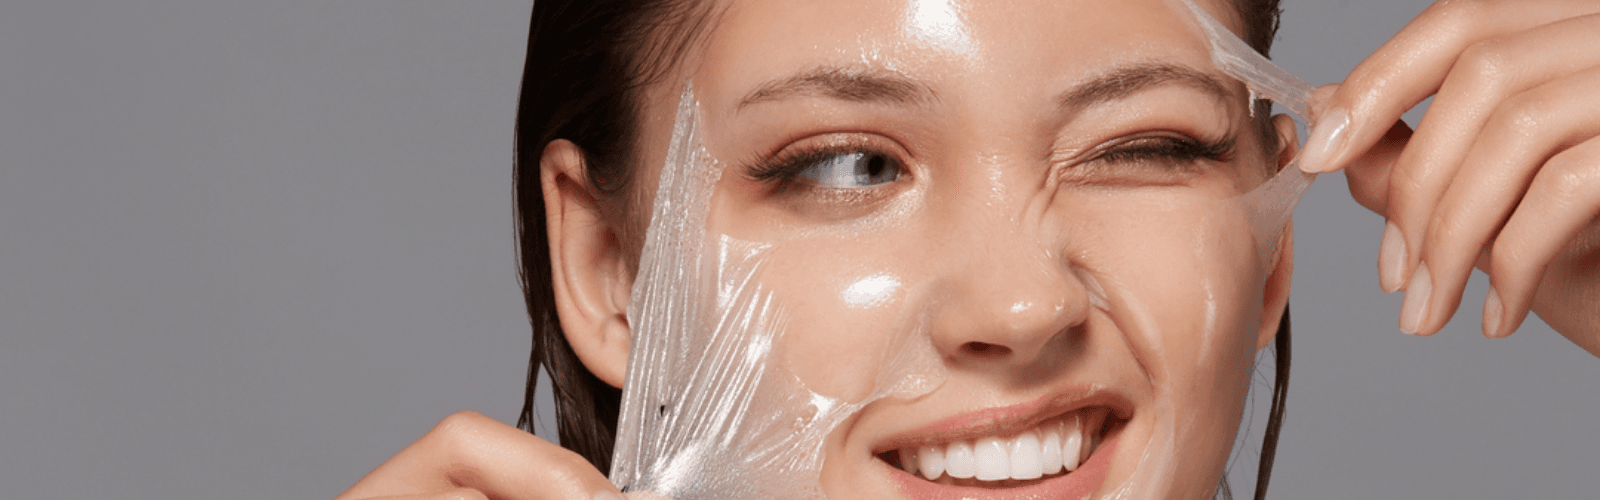 women doing facial peeling